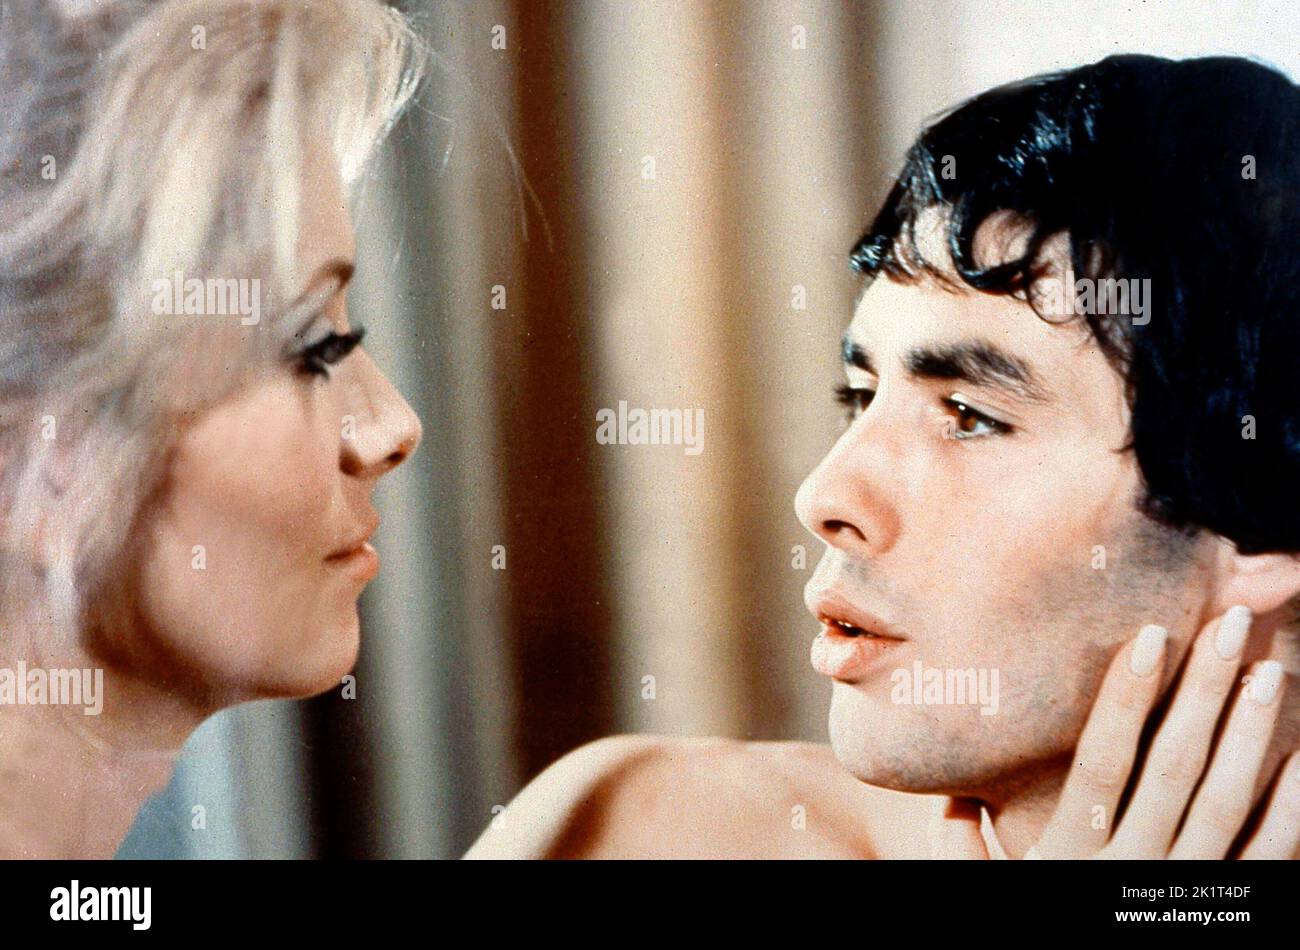 CATHERINE DENEUVE and PIERRE CLEMENTI in BELLE DE JOUR (1967), directed by LUIS BUÑUEL. Credit: PARIS FILM/FIVE FILM / Album Stock Photo